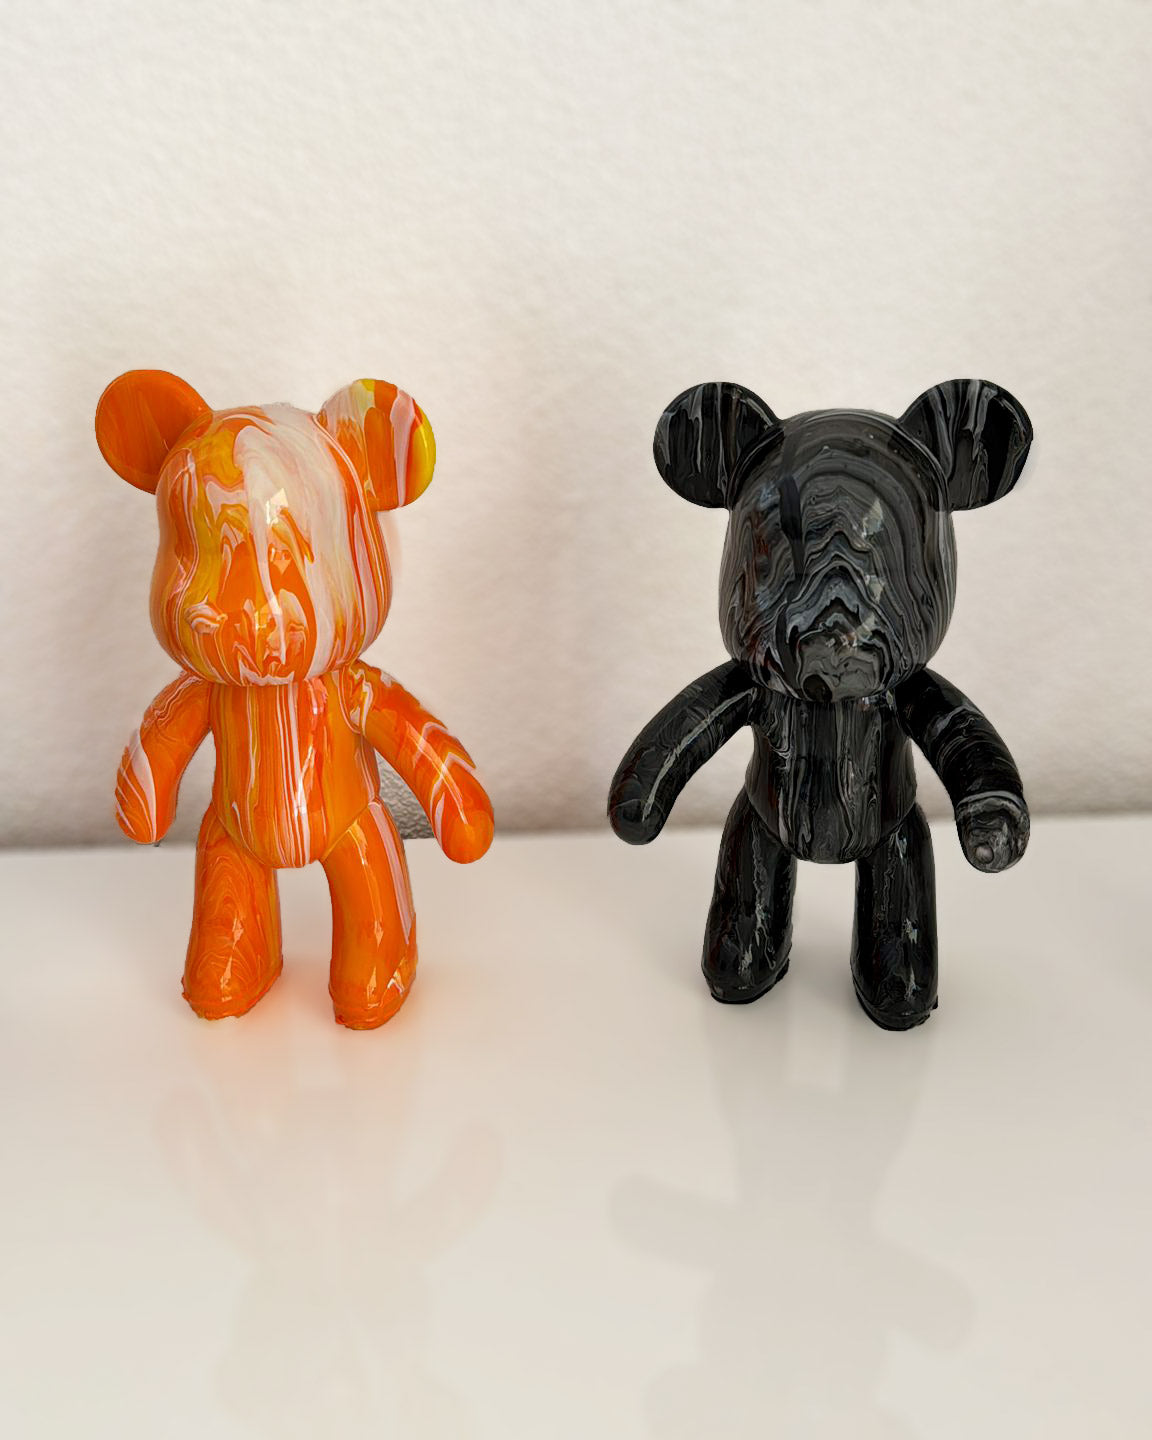 Kit de peinture pouring fluide art - Ours Teddy Bear Orange/Jaune/Blanc JOY!